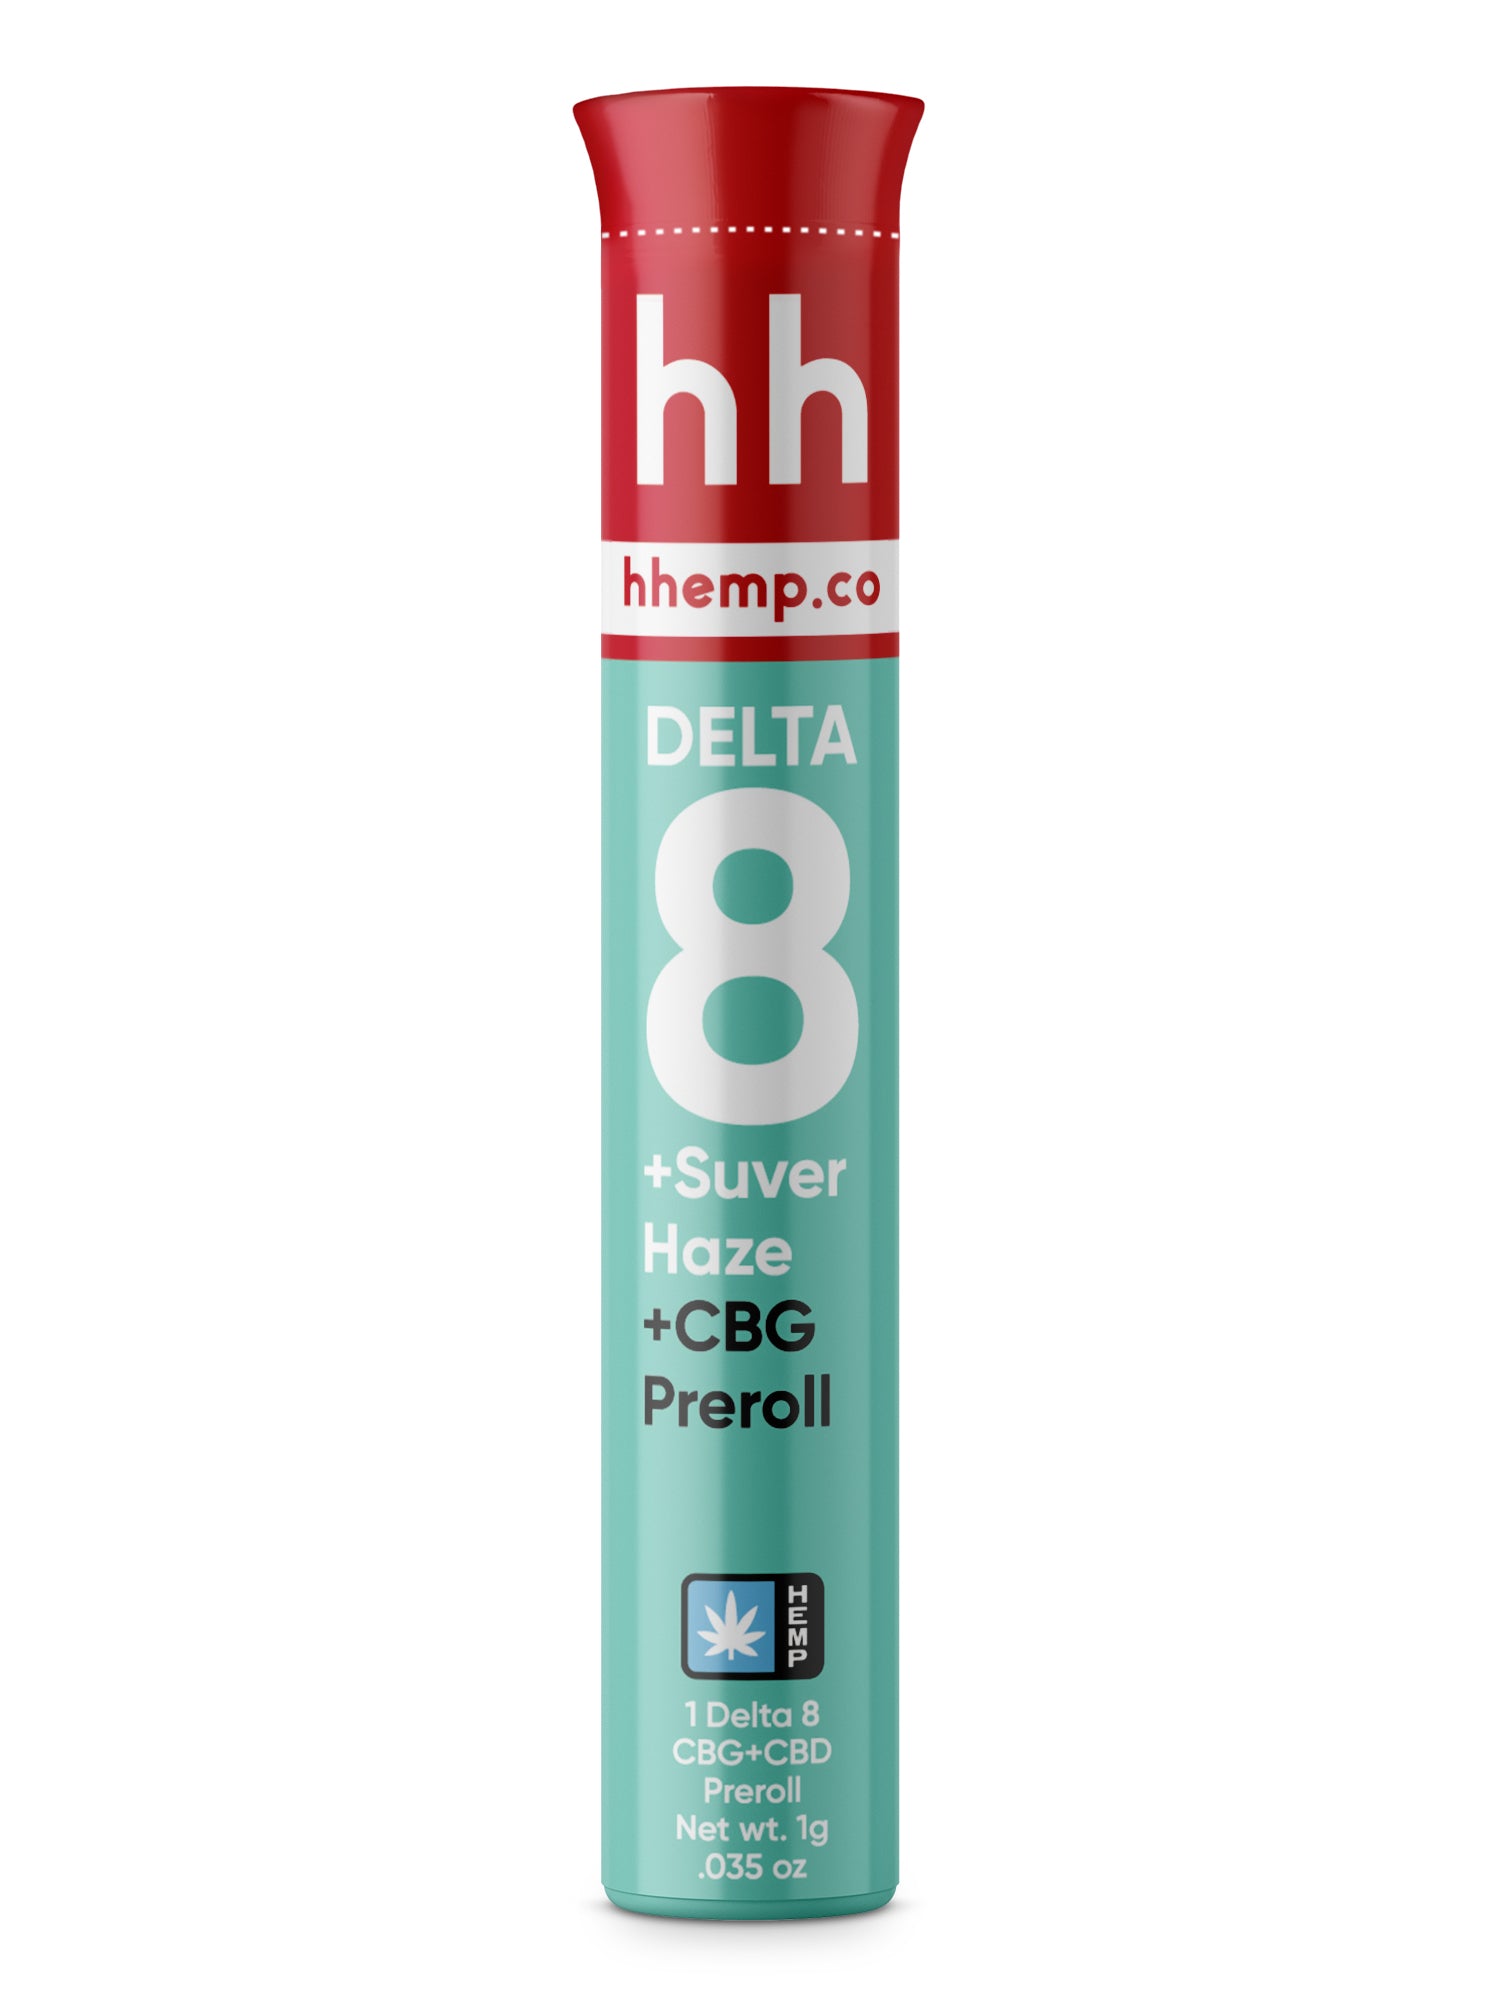 hhemp.co Delta 8 Infused Preroll - CBG + Suver Haze